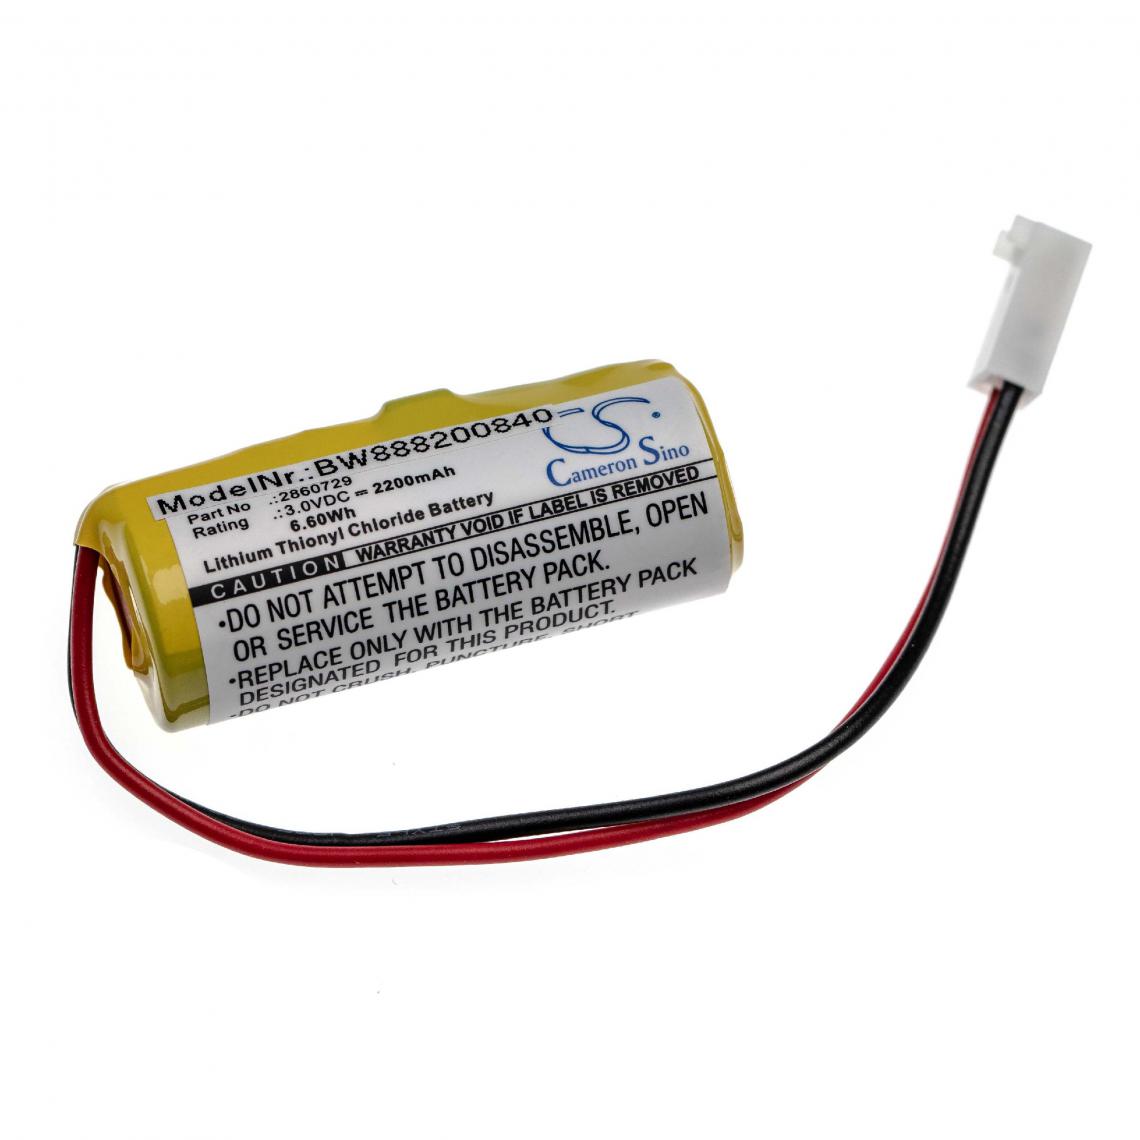 Vhbw - vhbw batterie compatible avec Alaris Medicalsystems 2860, 2863, 2865, 2866, III appareil de médecine comme pompe à perfusion (2200mAh, 3V, Li-SOCl2) - Piles spécifiques